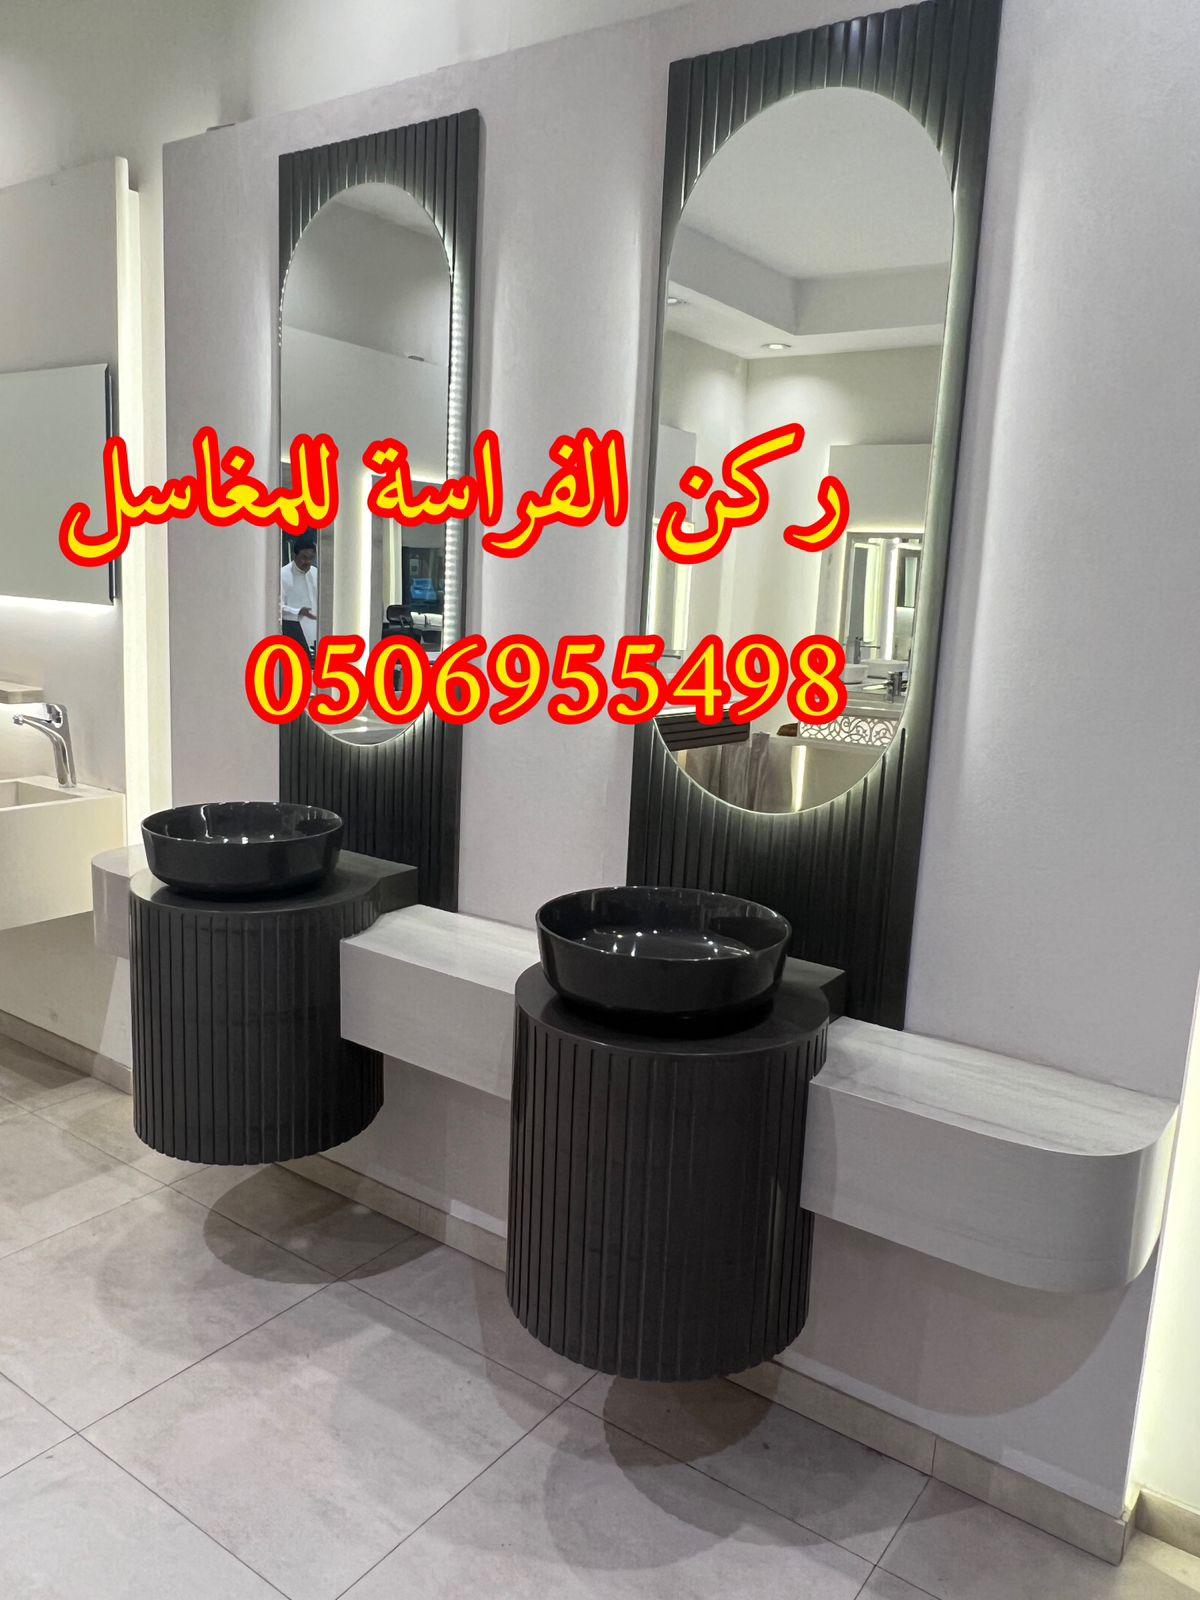 تفصيل احواض مغاسل رخام في الرياض,0506955498 495869330